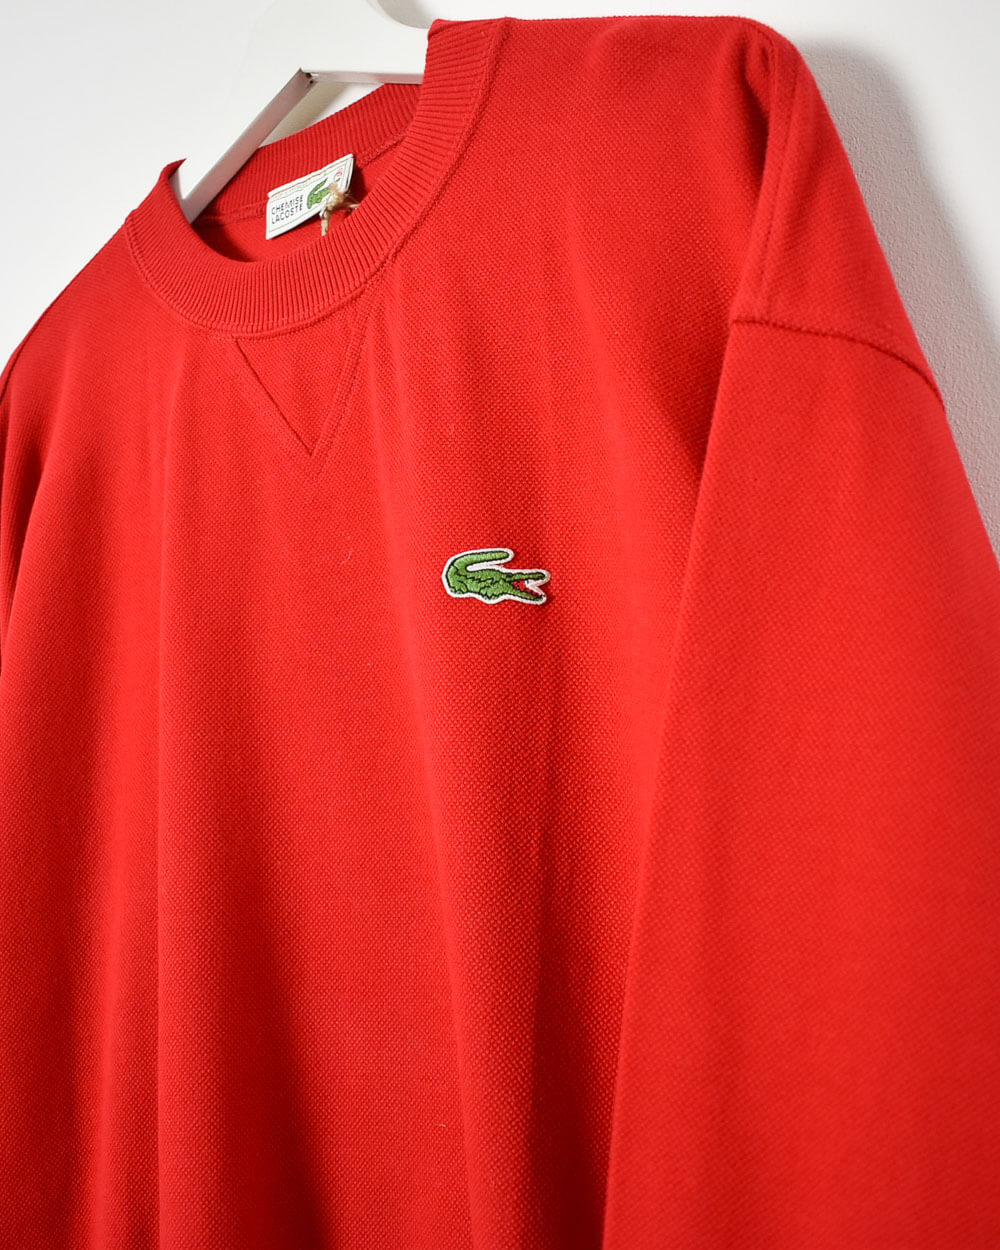 Red Chemise Lacoste Sweatshirt - Large